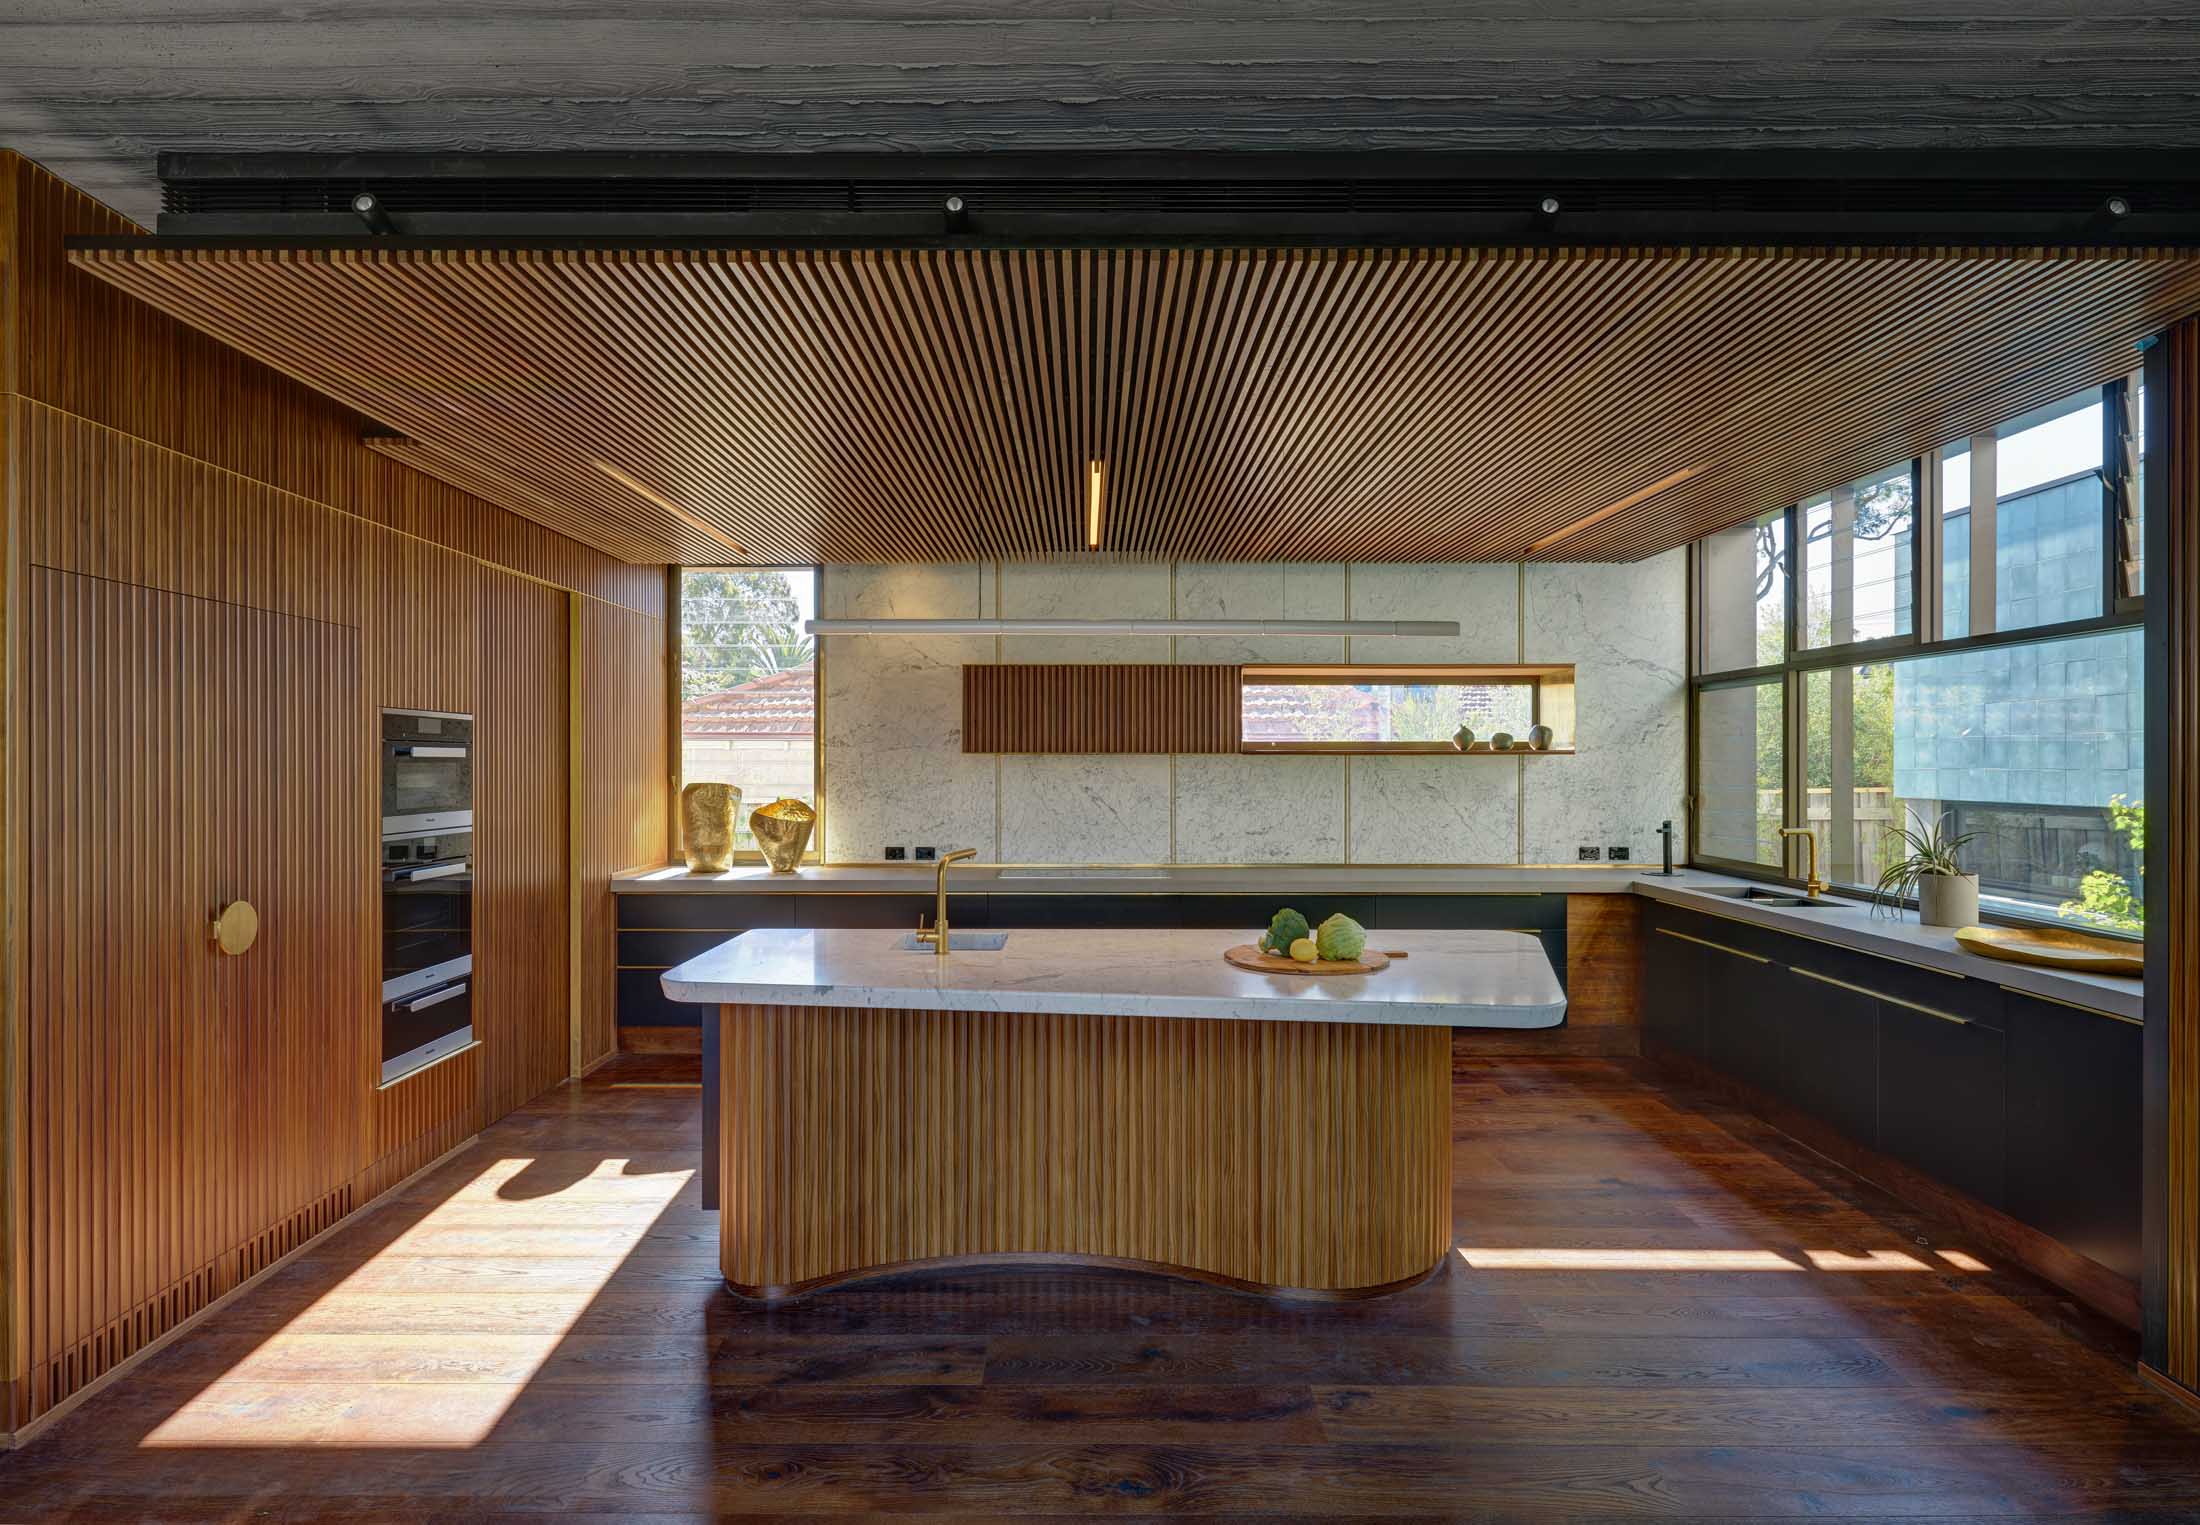 Roscommon-House-kitchen-interior